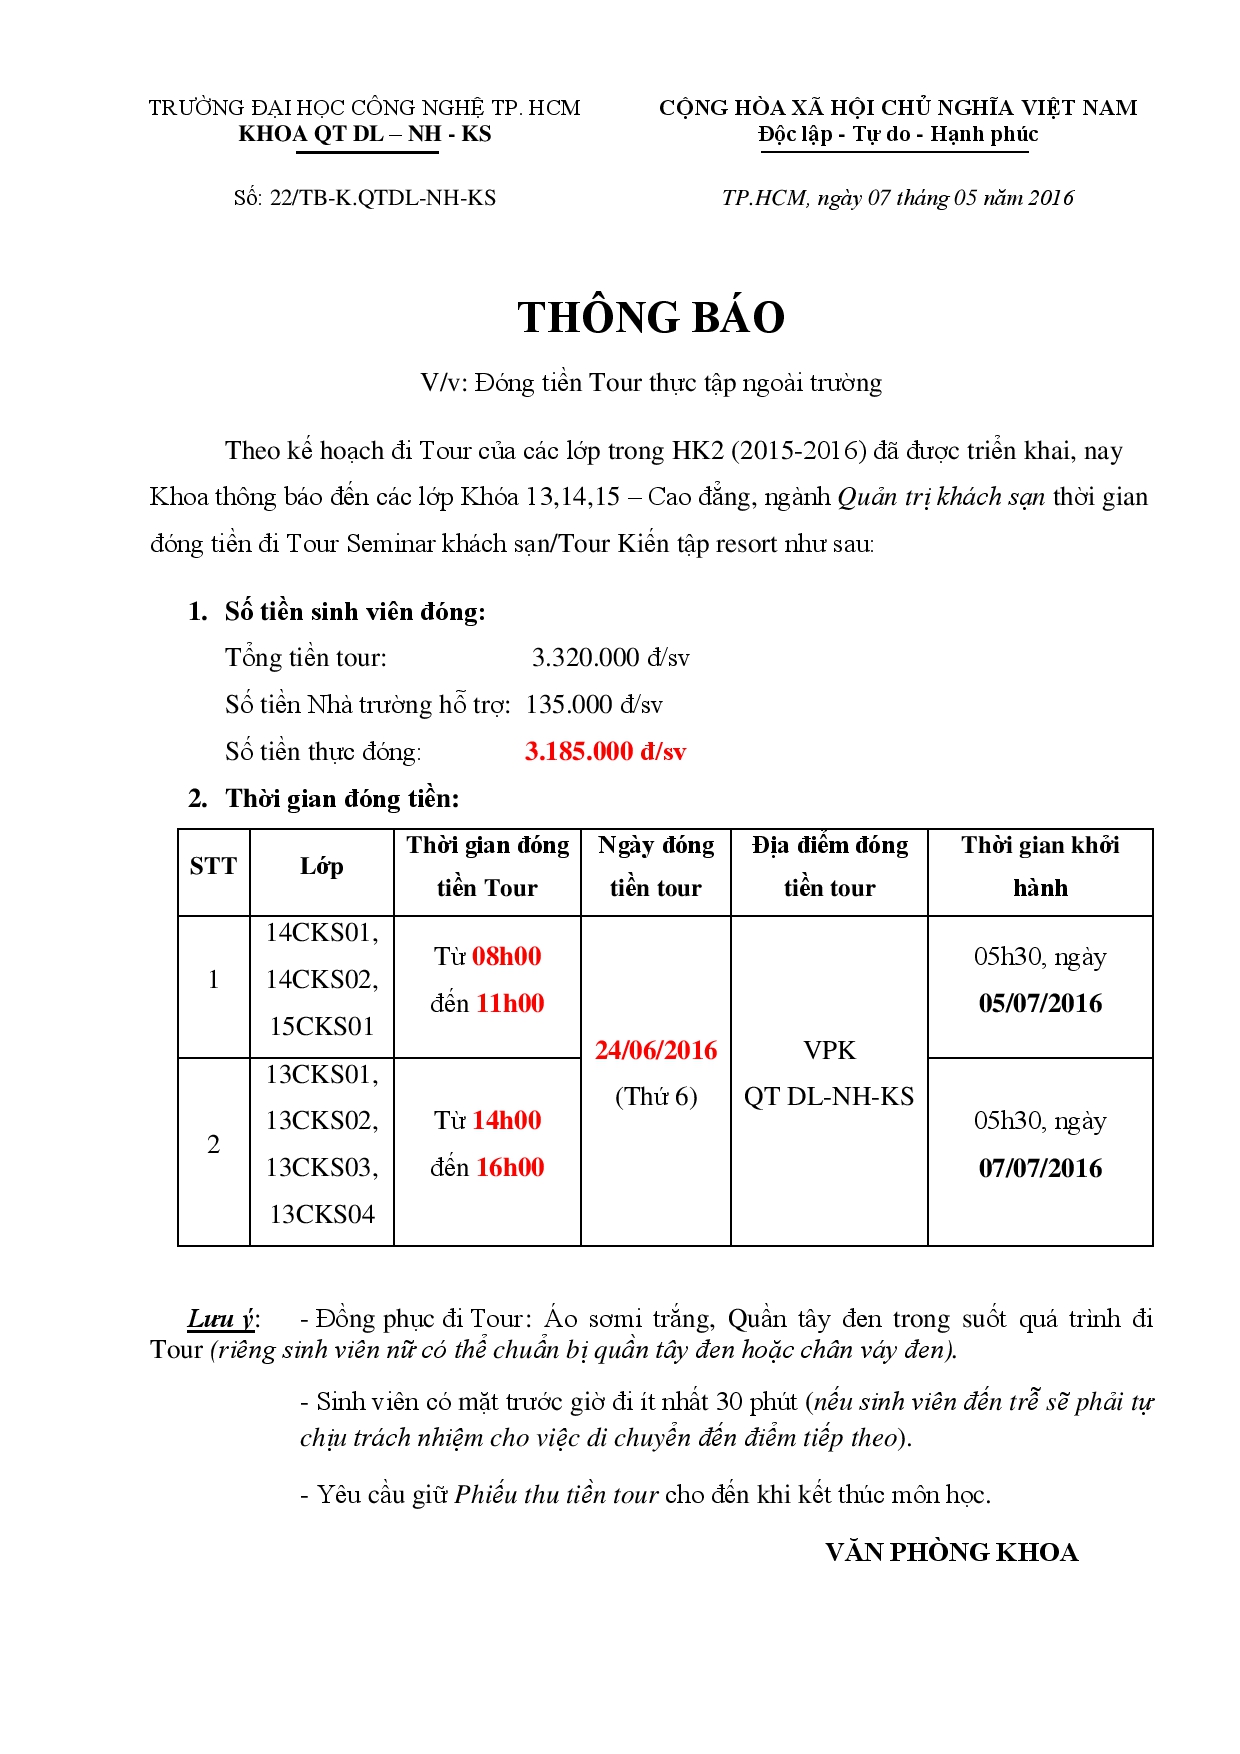 TB về việc đóng tiền đi tour Phan Thiết (Môn Seminar KS1,2 và môn Kiến tập Resort) - Update TG khởi  2